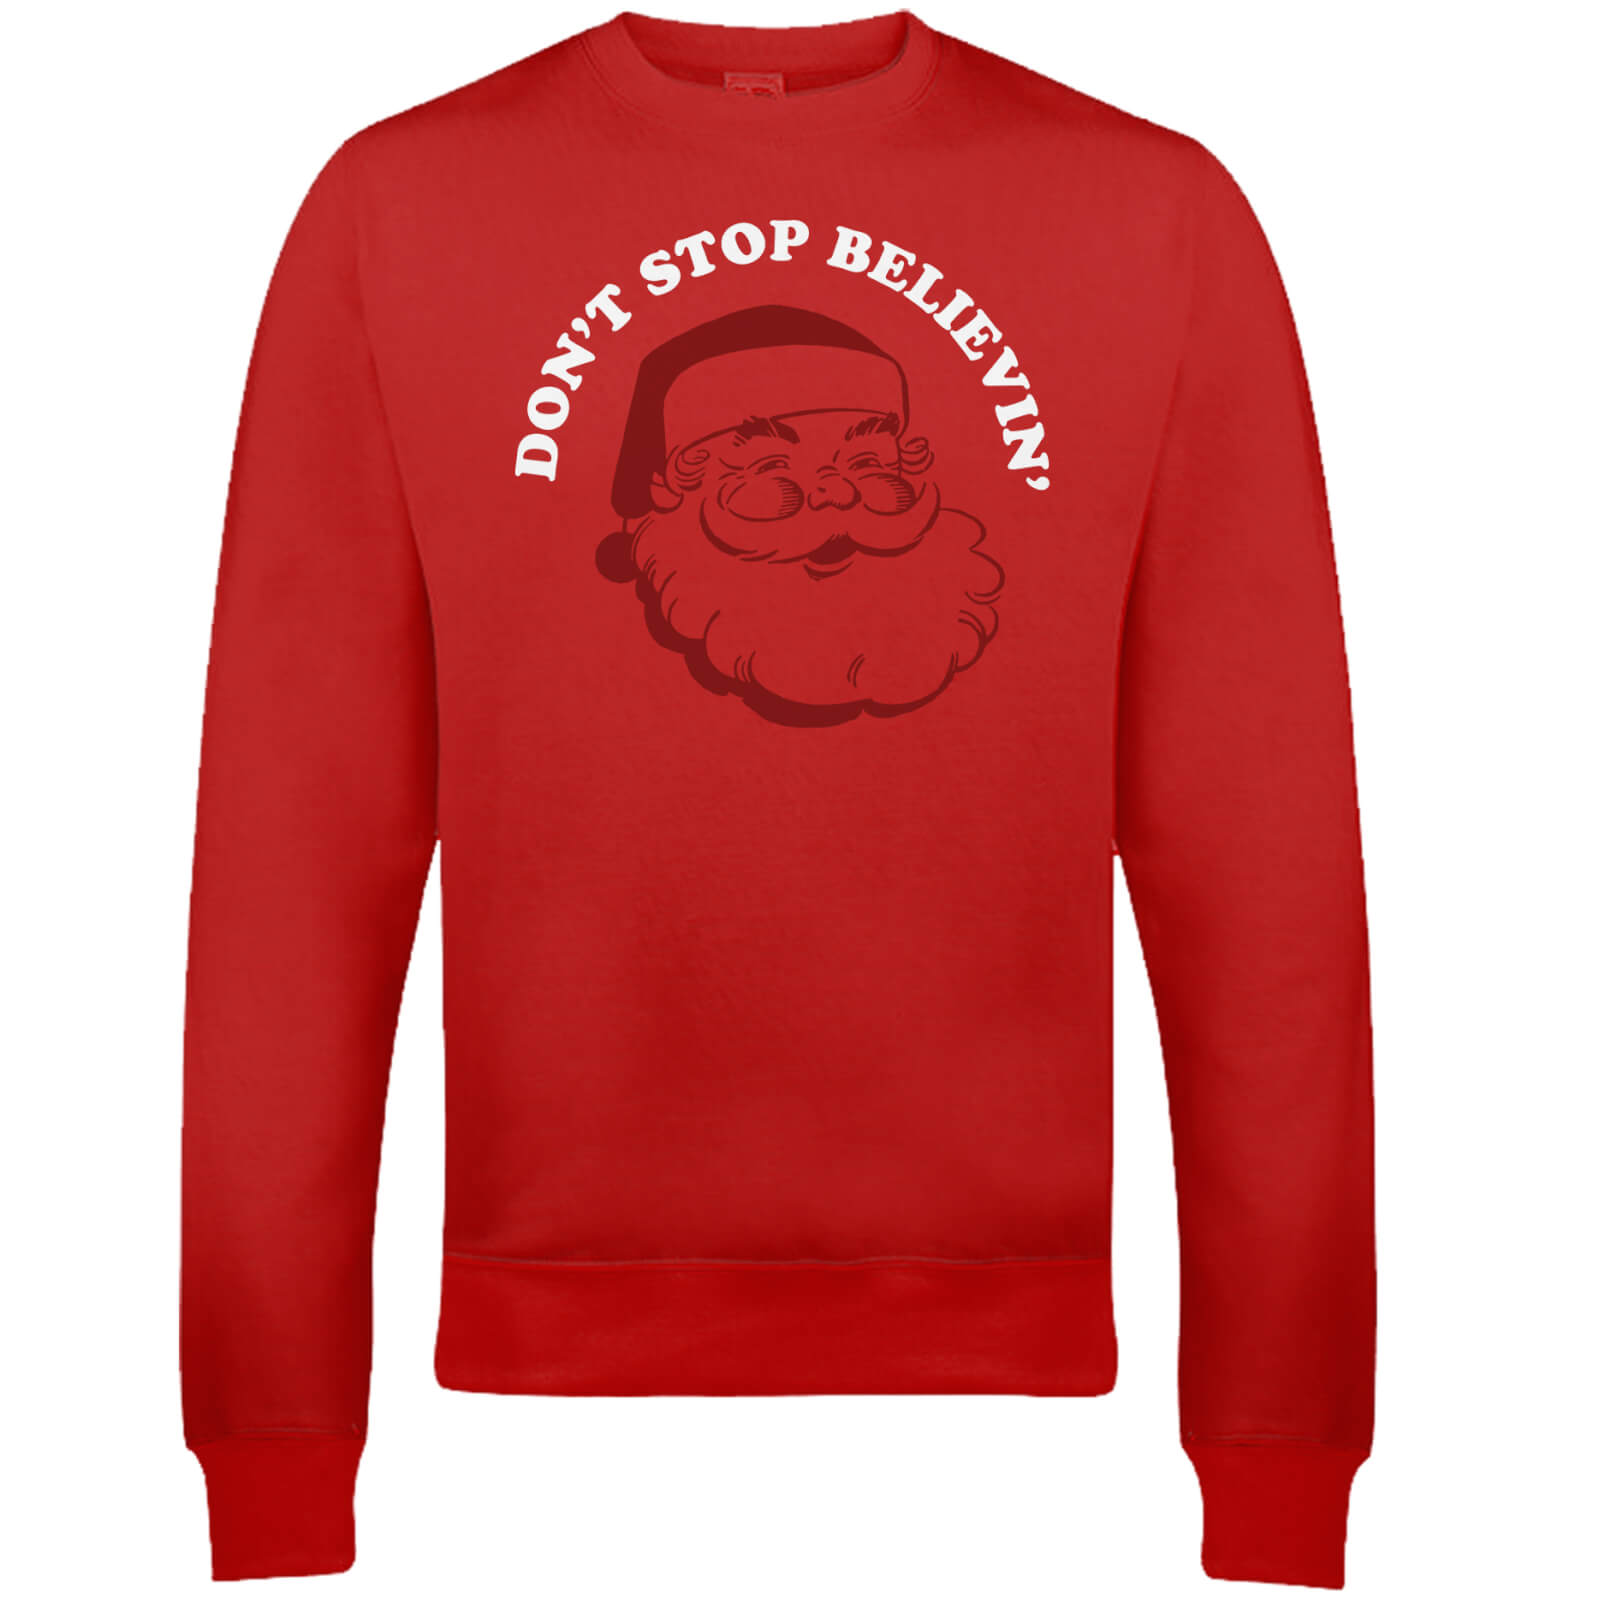 Don't Stop Believin' Christmas Sweatshirt - Red - S